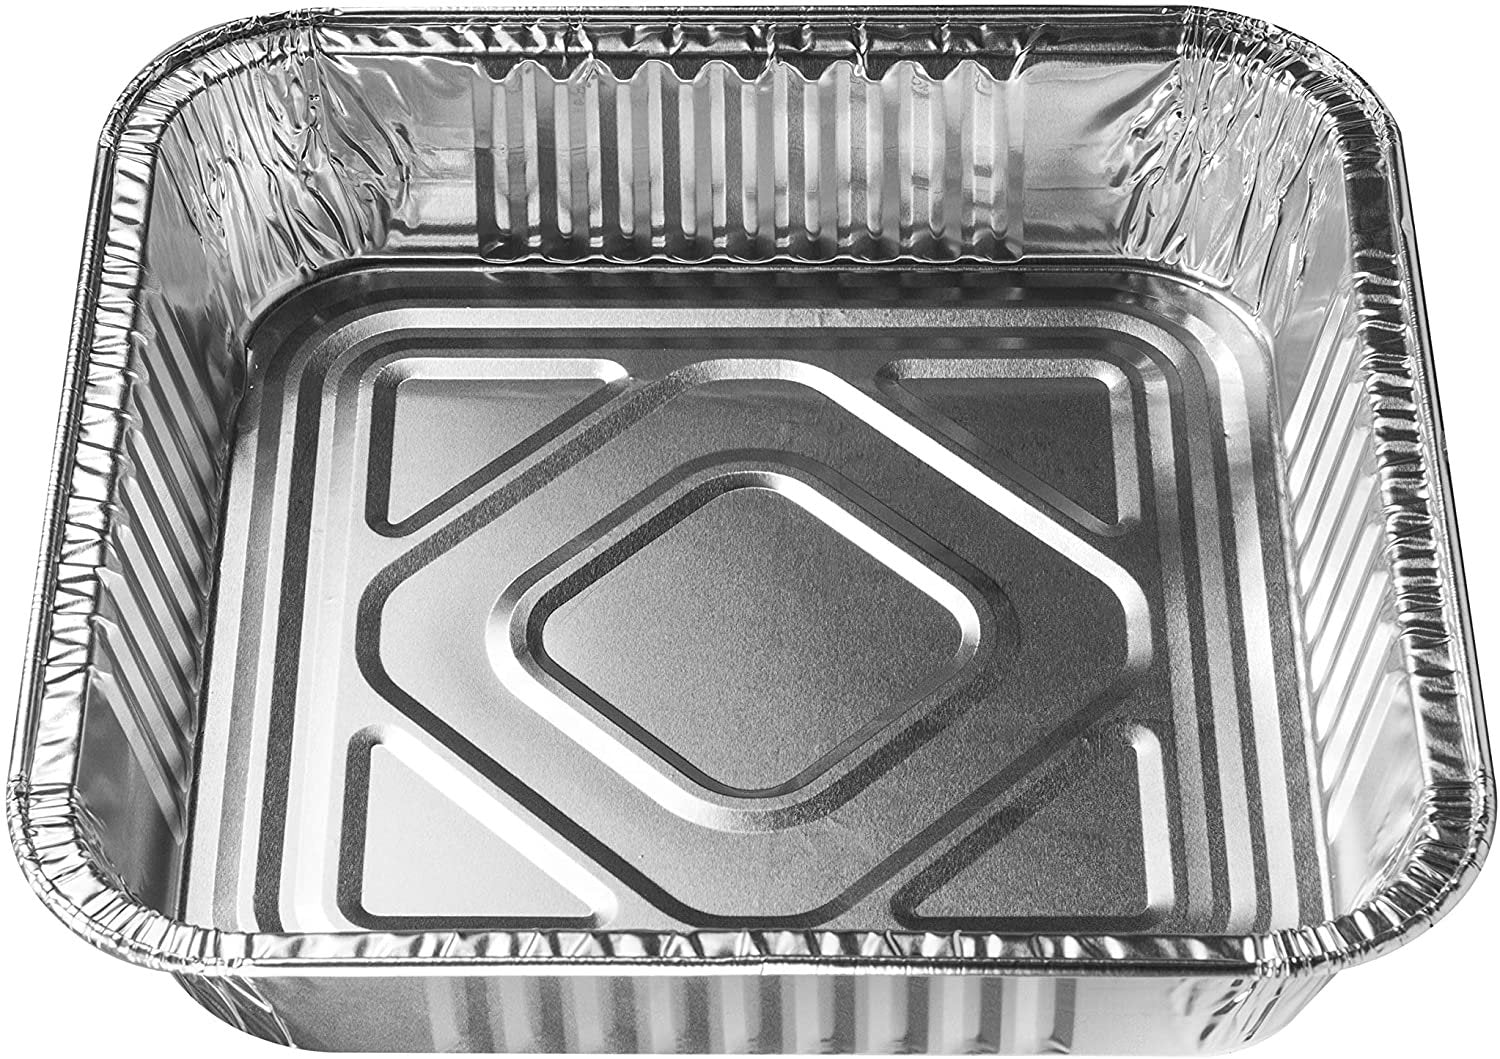 9X13 Half Size Aluminum Foil Pans Disposable 30 Pack Baking Pans Square  Aluminum